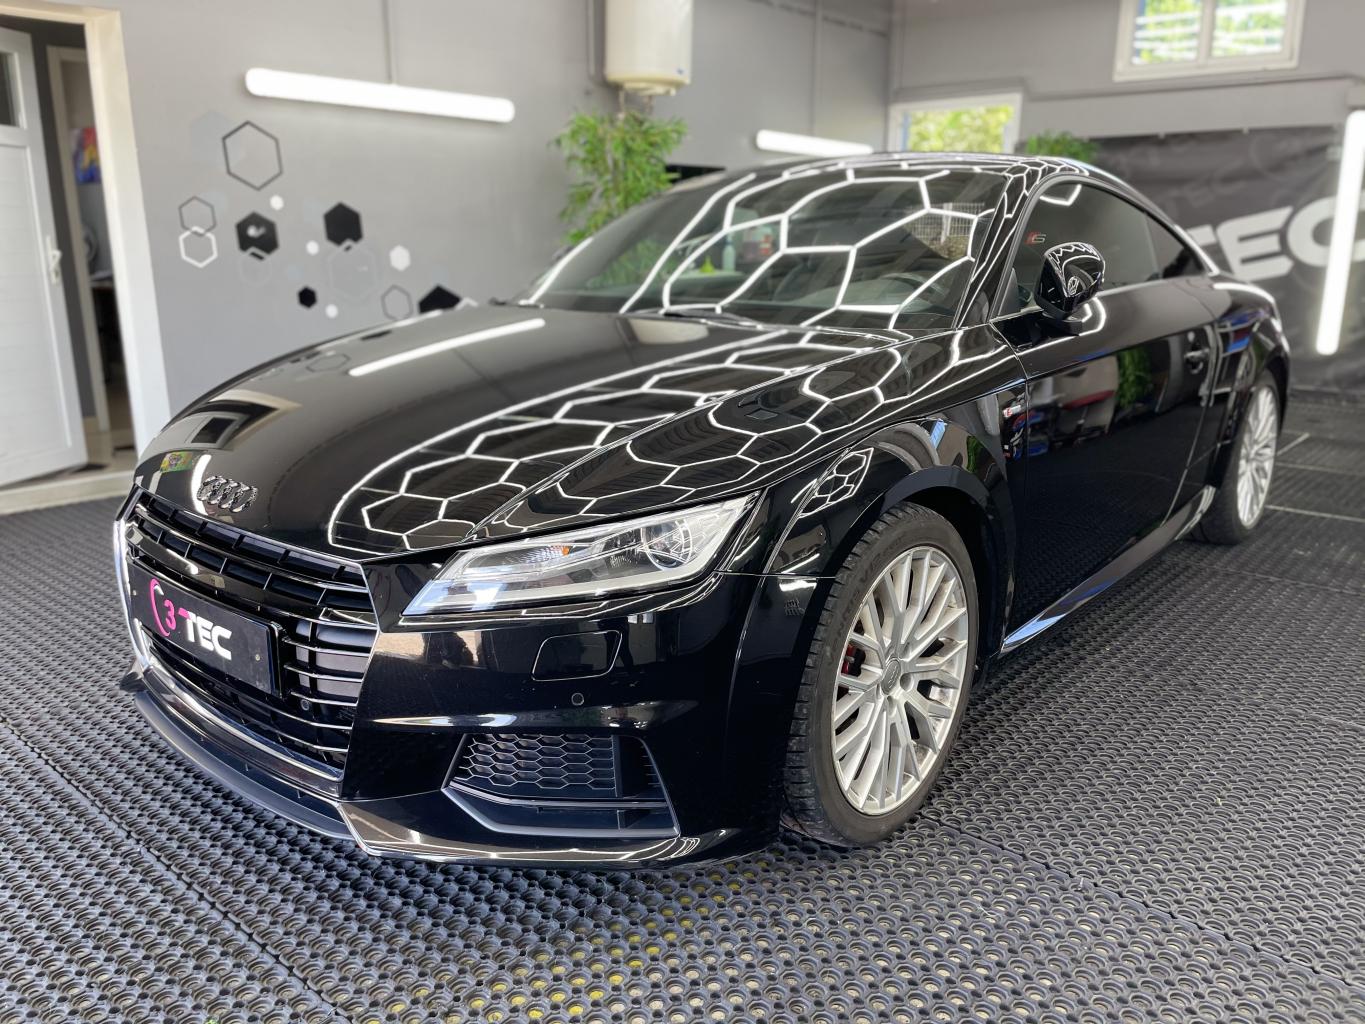 Polish et traitement C2 Gtechniq sur une Audi TT